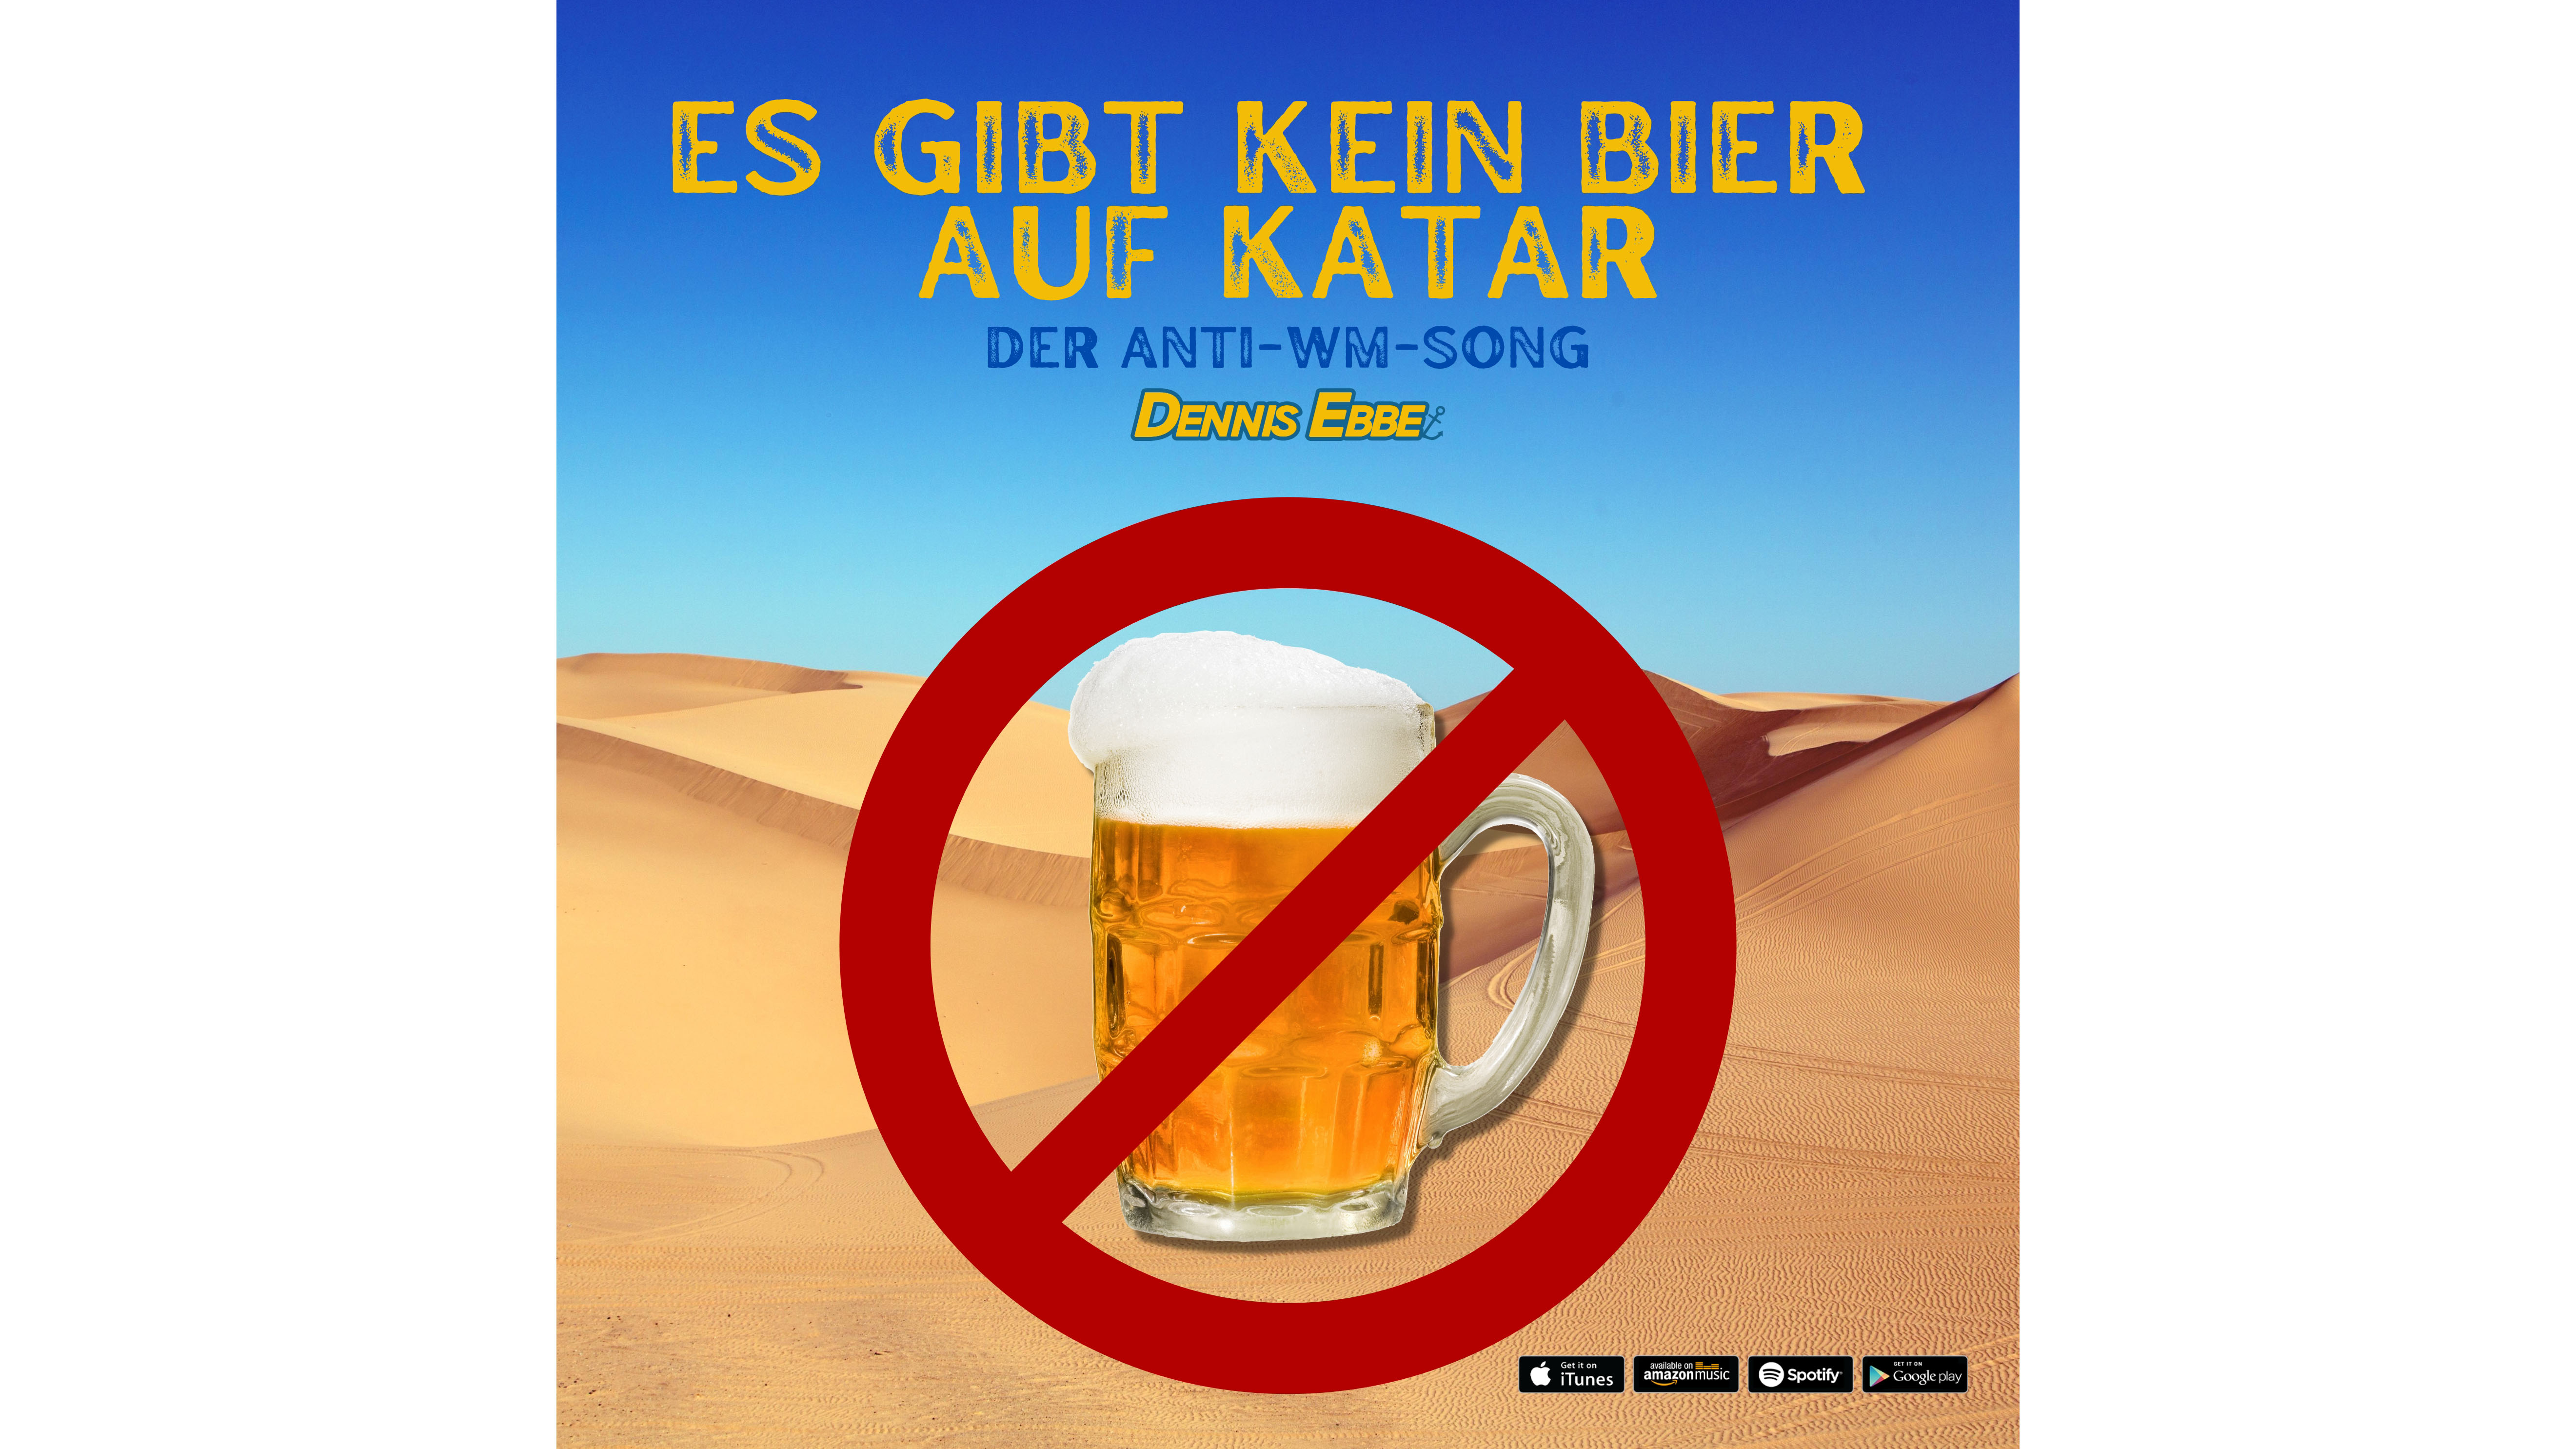 Anti-WM-Song: "Es gibt kein Bier auf Katar" - COMPUTER BILD